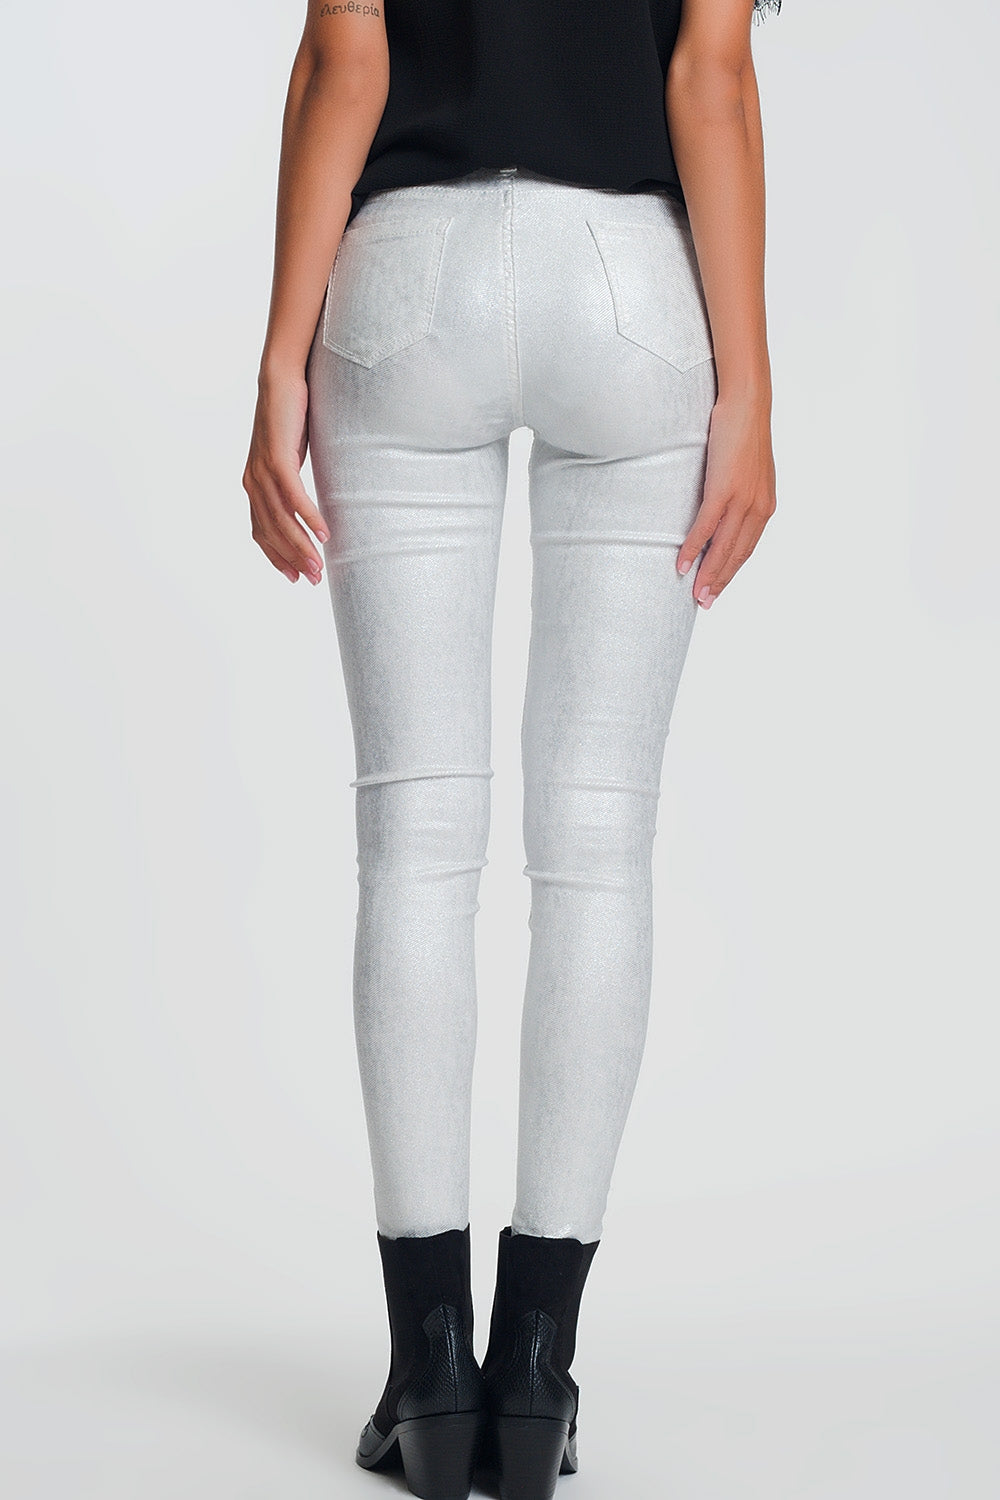 Pantaloni super skinny bianchi a vita alta con scintillio argento